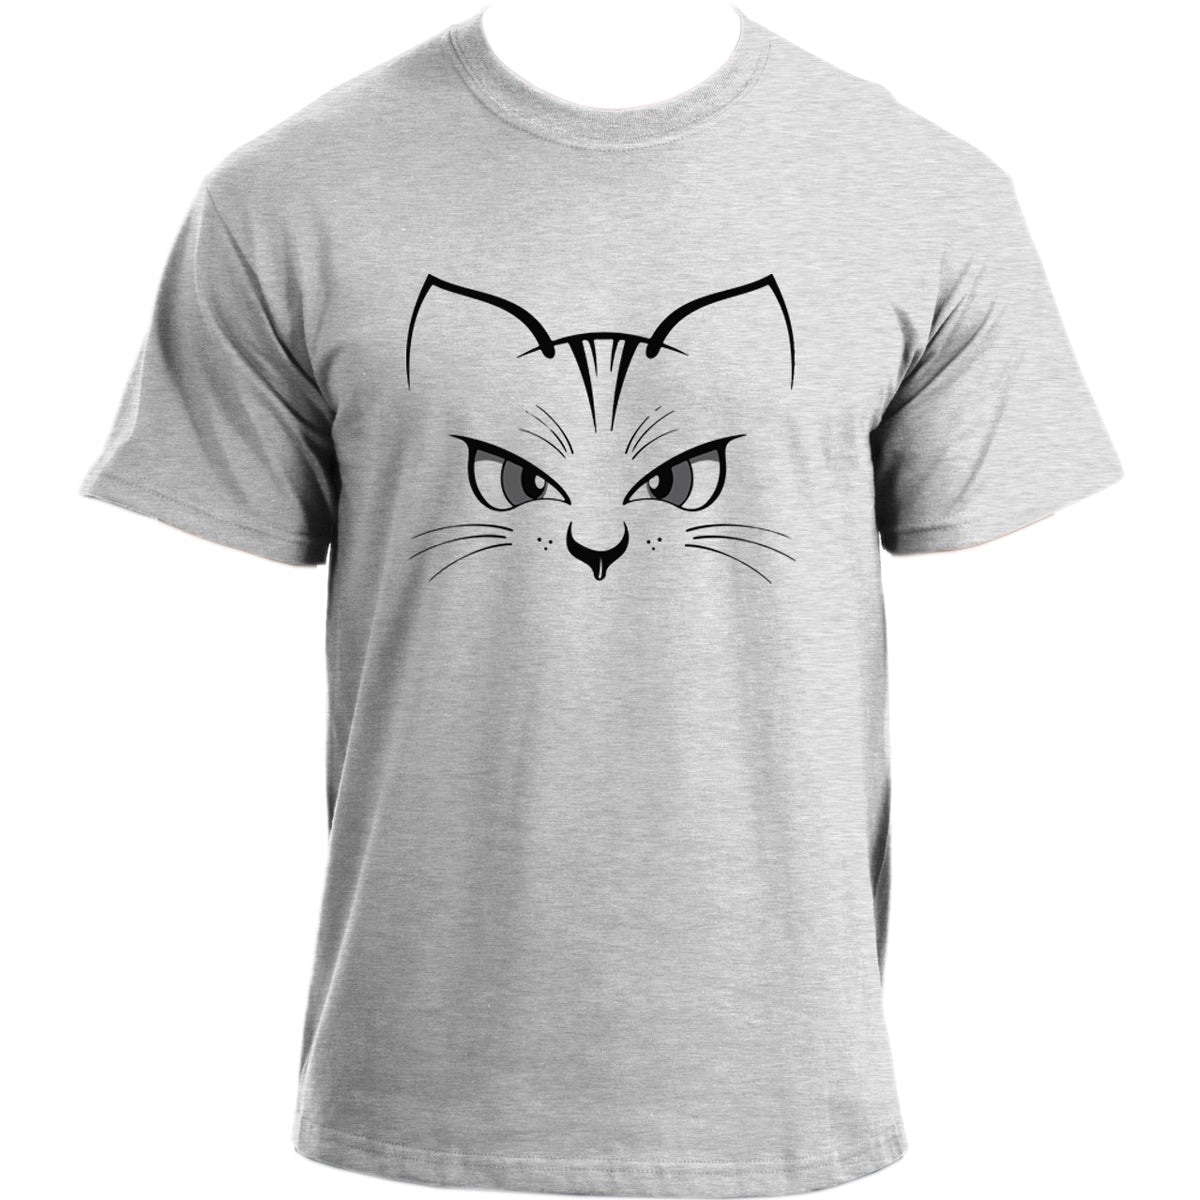 Cat Silhouette T-Shirt I Kitten Cat Lovers I Cat Tshirt For Men